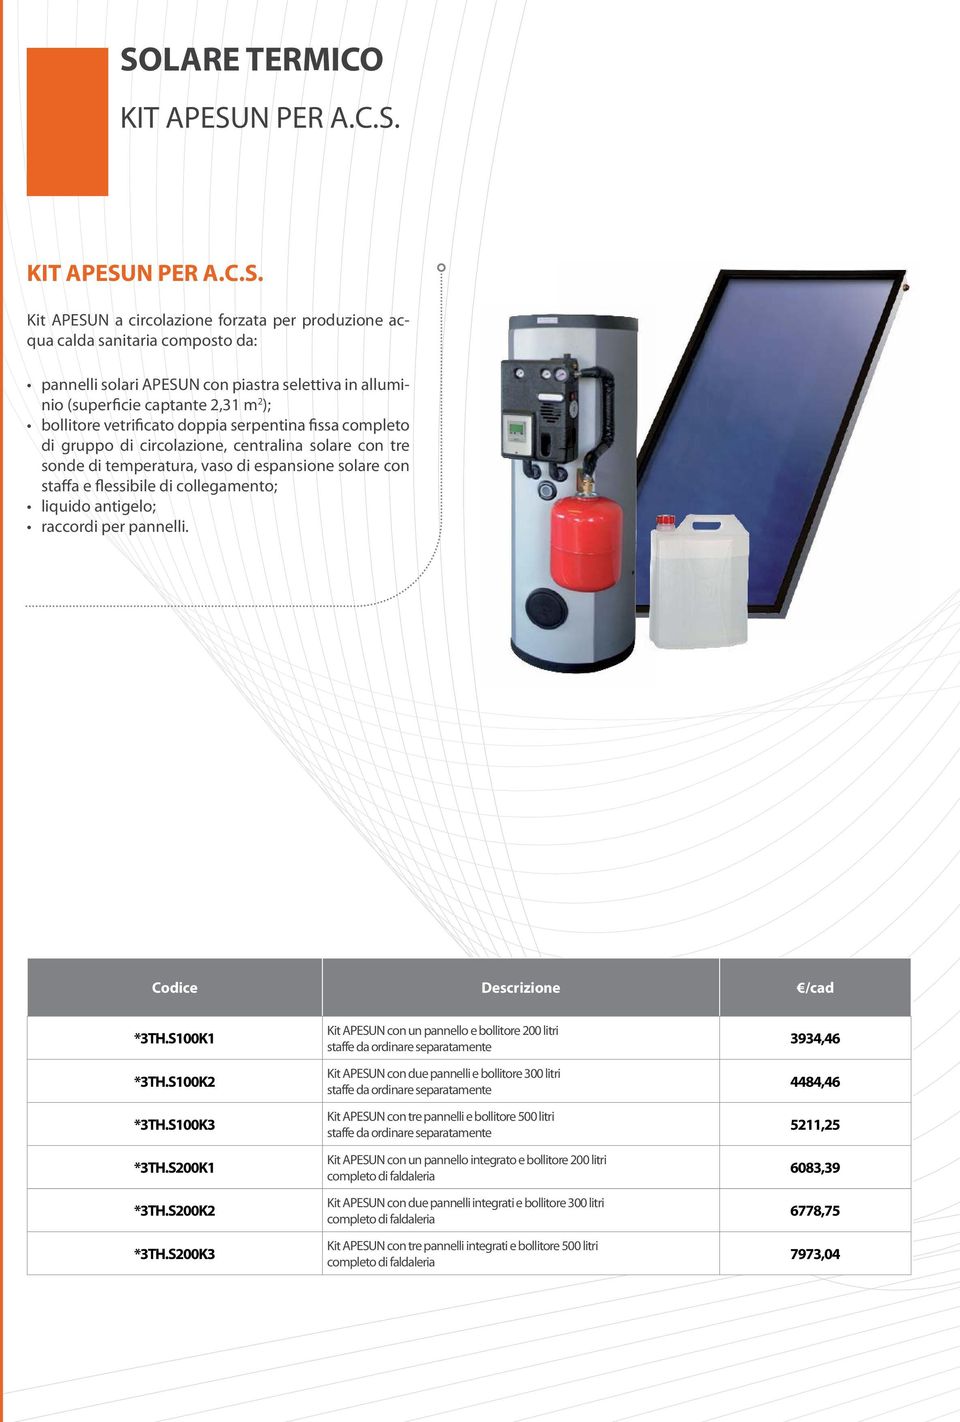 Kit APESUN a circolazione forzata per produzione acqua calda sanitaria composto da: pannelli solari APESUN con piastra selettiva in alluminio (superficie captante 2,31 m 2 ); bollitore vetrificato